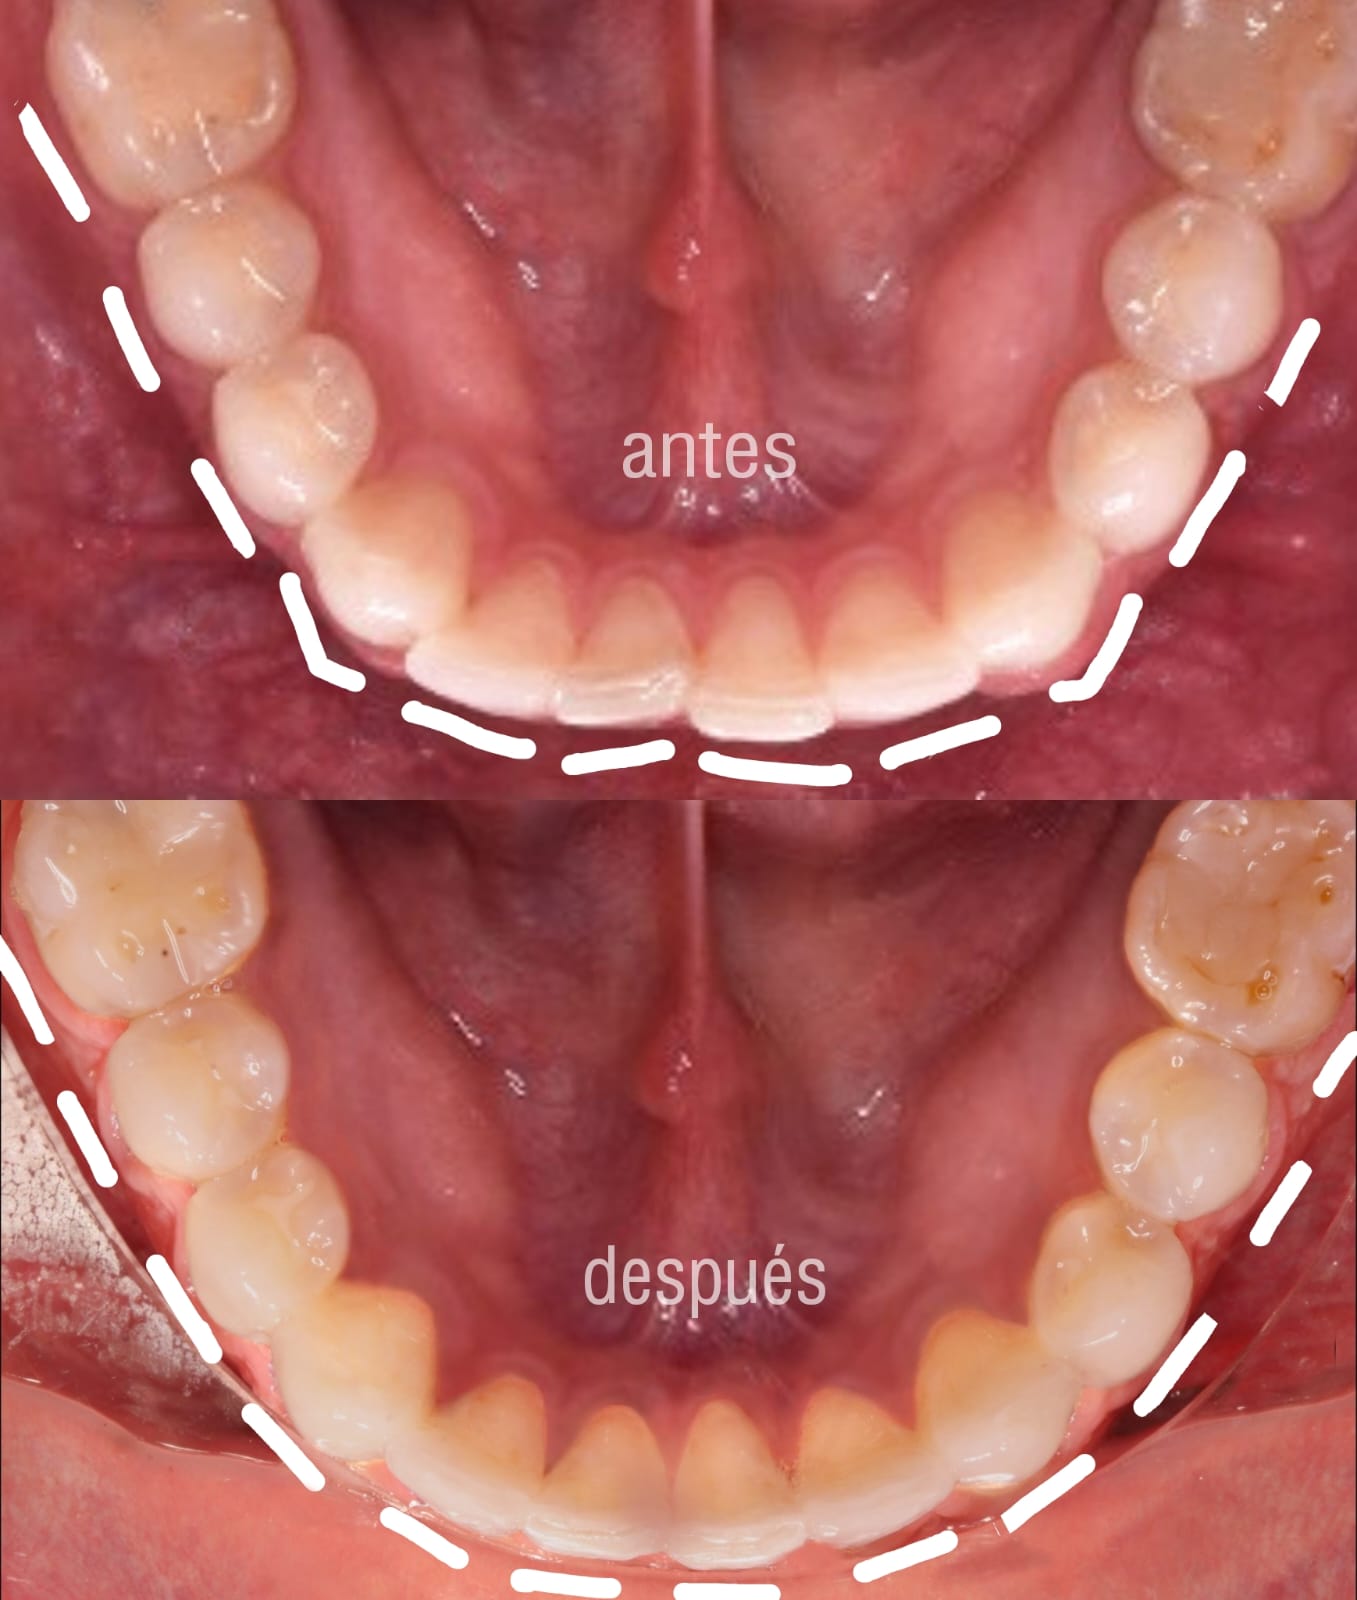 alineadores-dentales-antes-despues